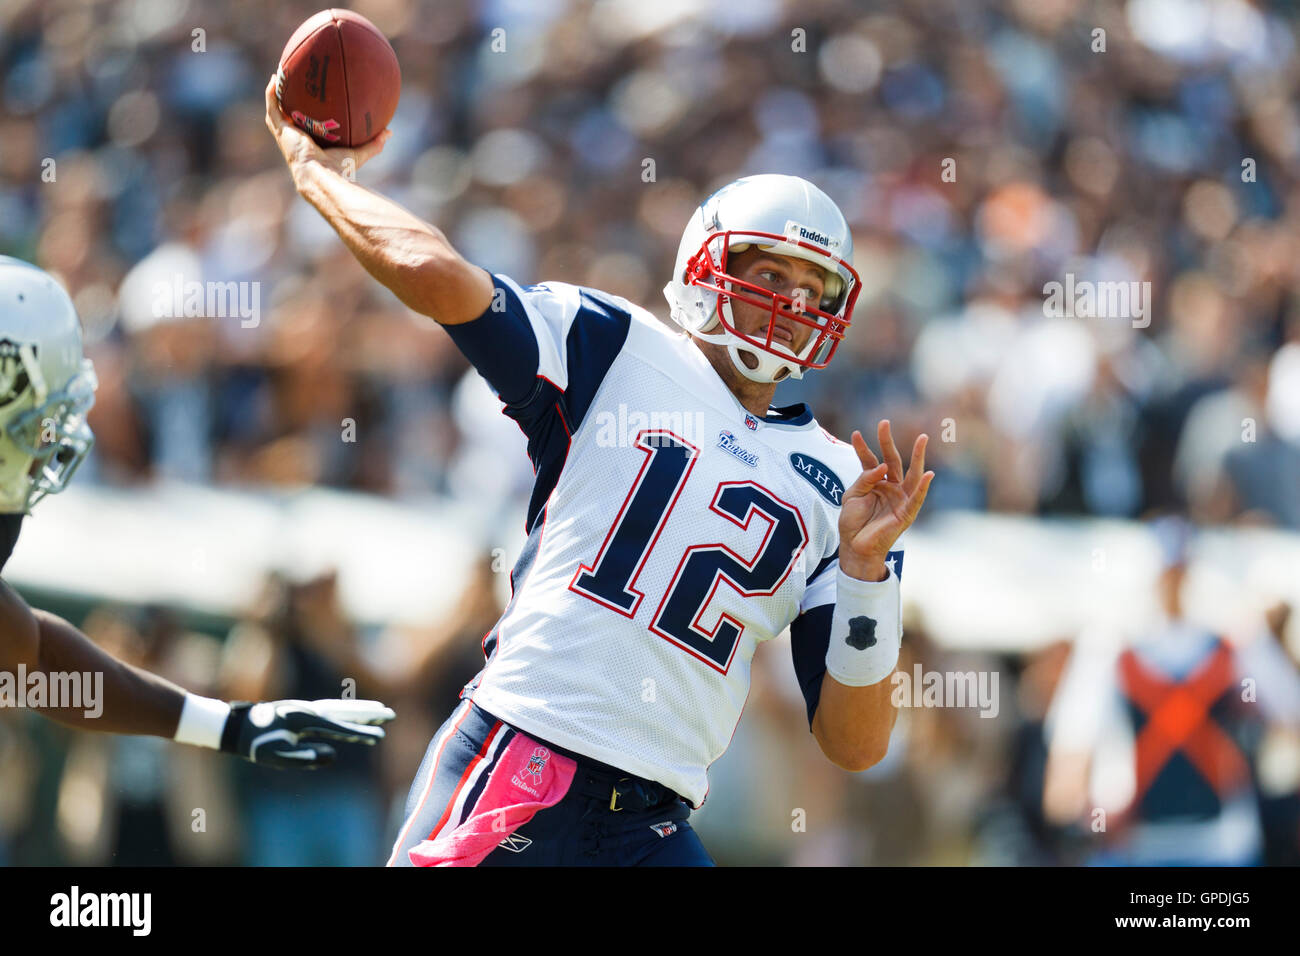 Okt 2, 2011; Oakland, Ca, USA; New England Patriots Quarterback Tom Brady (12) gegen die Oakland Raiders im ersten Quartal bei o.co Kolosseum. Stockfoto